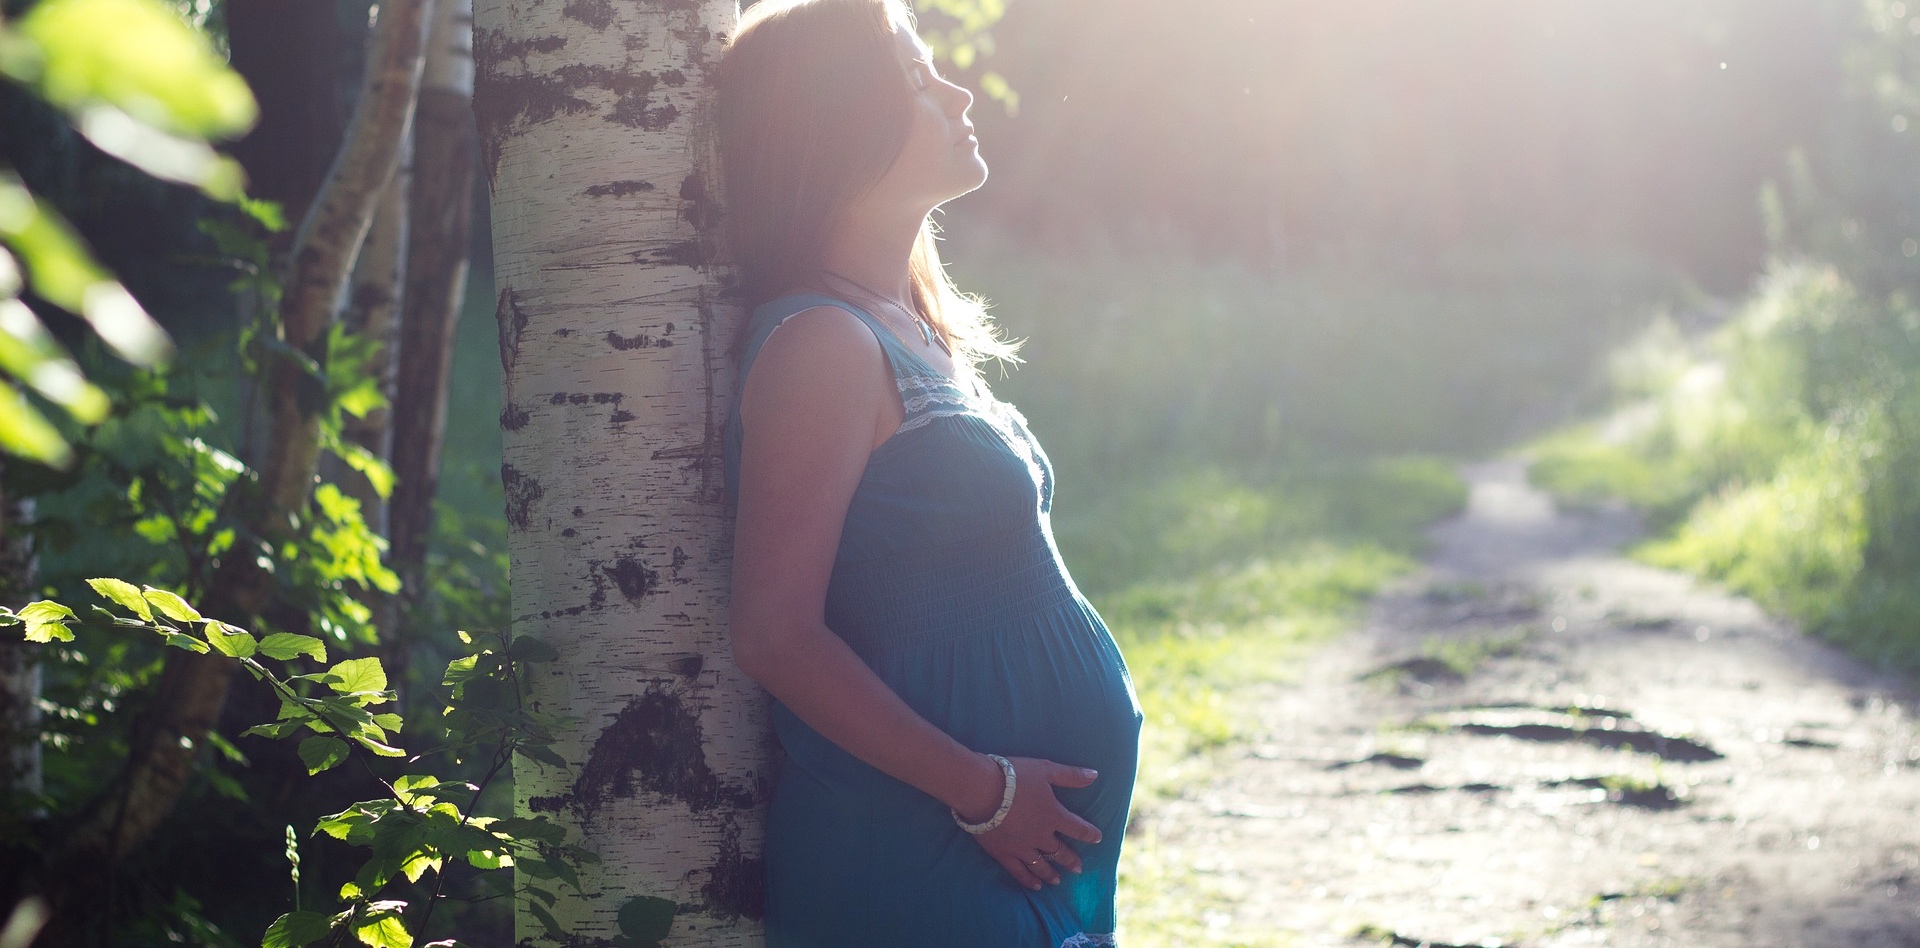 La grossesse entraînerait des changements dans la structure et la fonction cérébrale. © Egor105, Pixabay